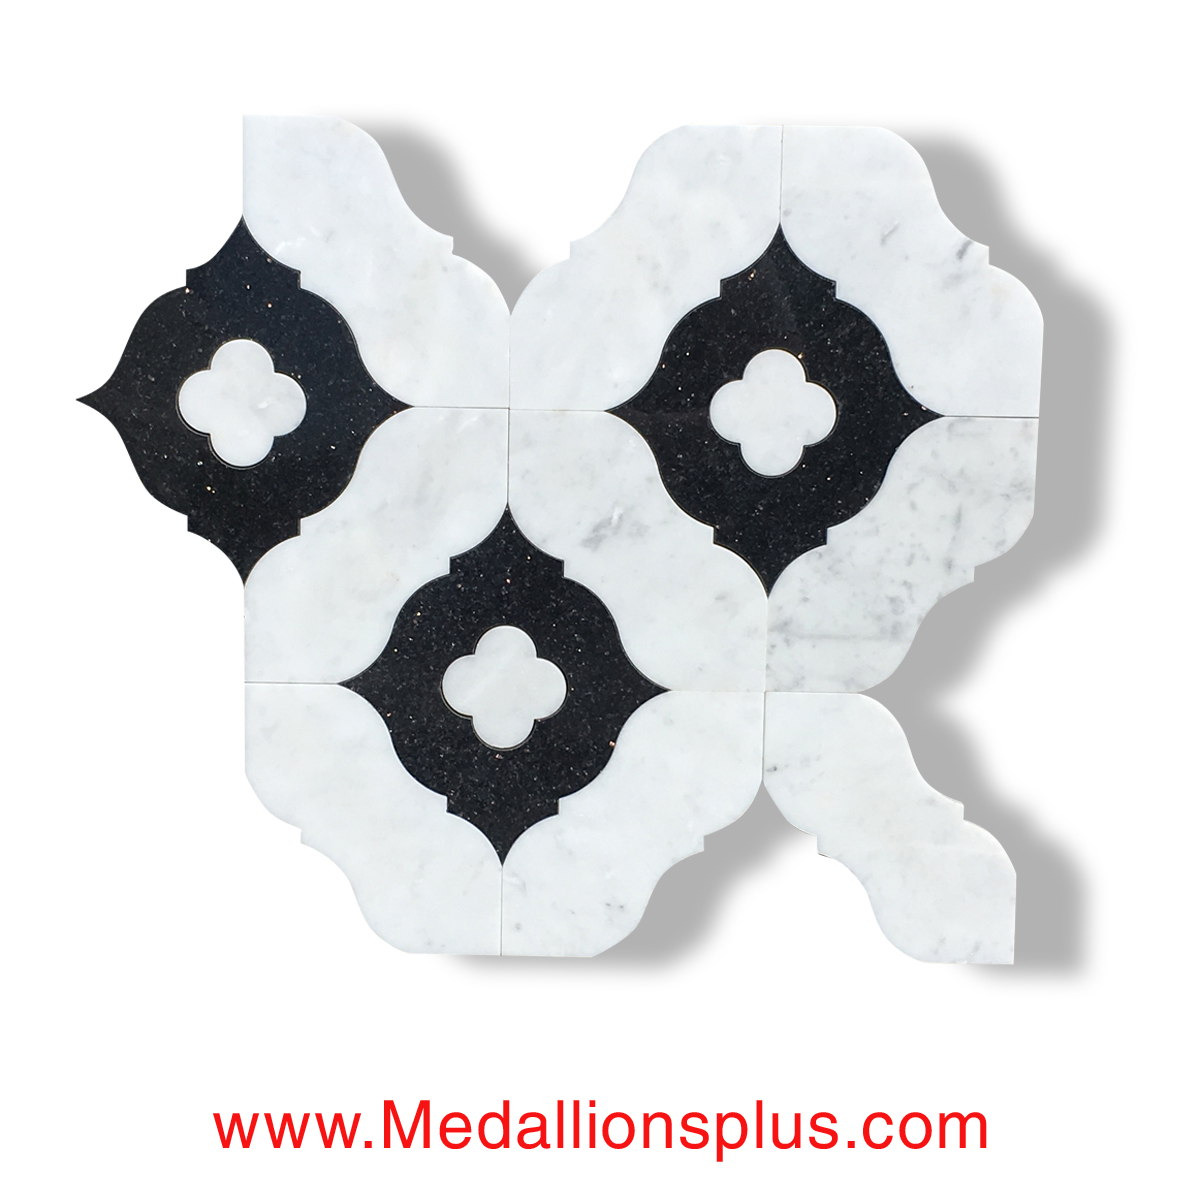 Carrara And Black Granite Waterjet Cut Tile Design 35